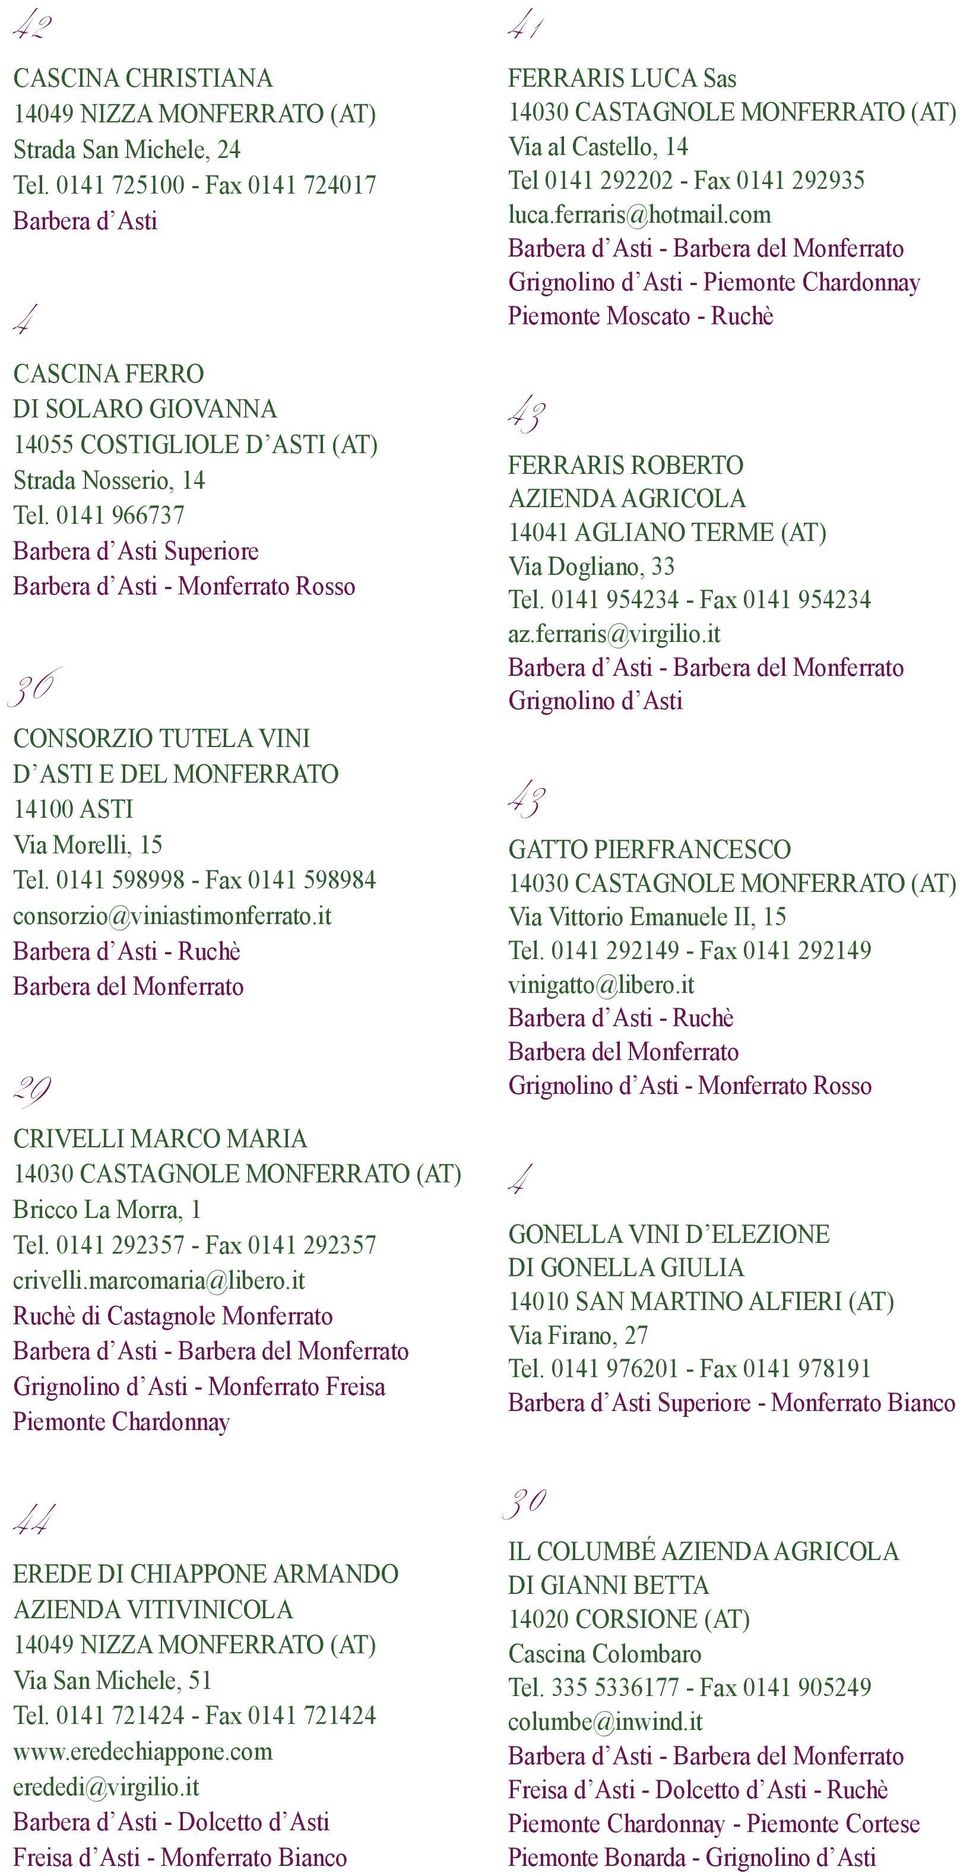 011 598998 - Fax 011 59898 consorzio@viniastimonferrato.it Barbera d Asti - Ruchè Barbera del Monferrato 9 CRIVELLI MARCO MARIA 1030 CASTAGNOLE MONFERRATO (AT) Bricco La Morra, 1 Tel.